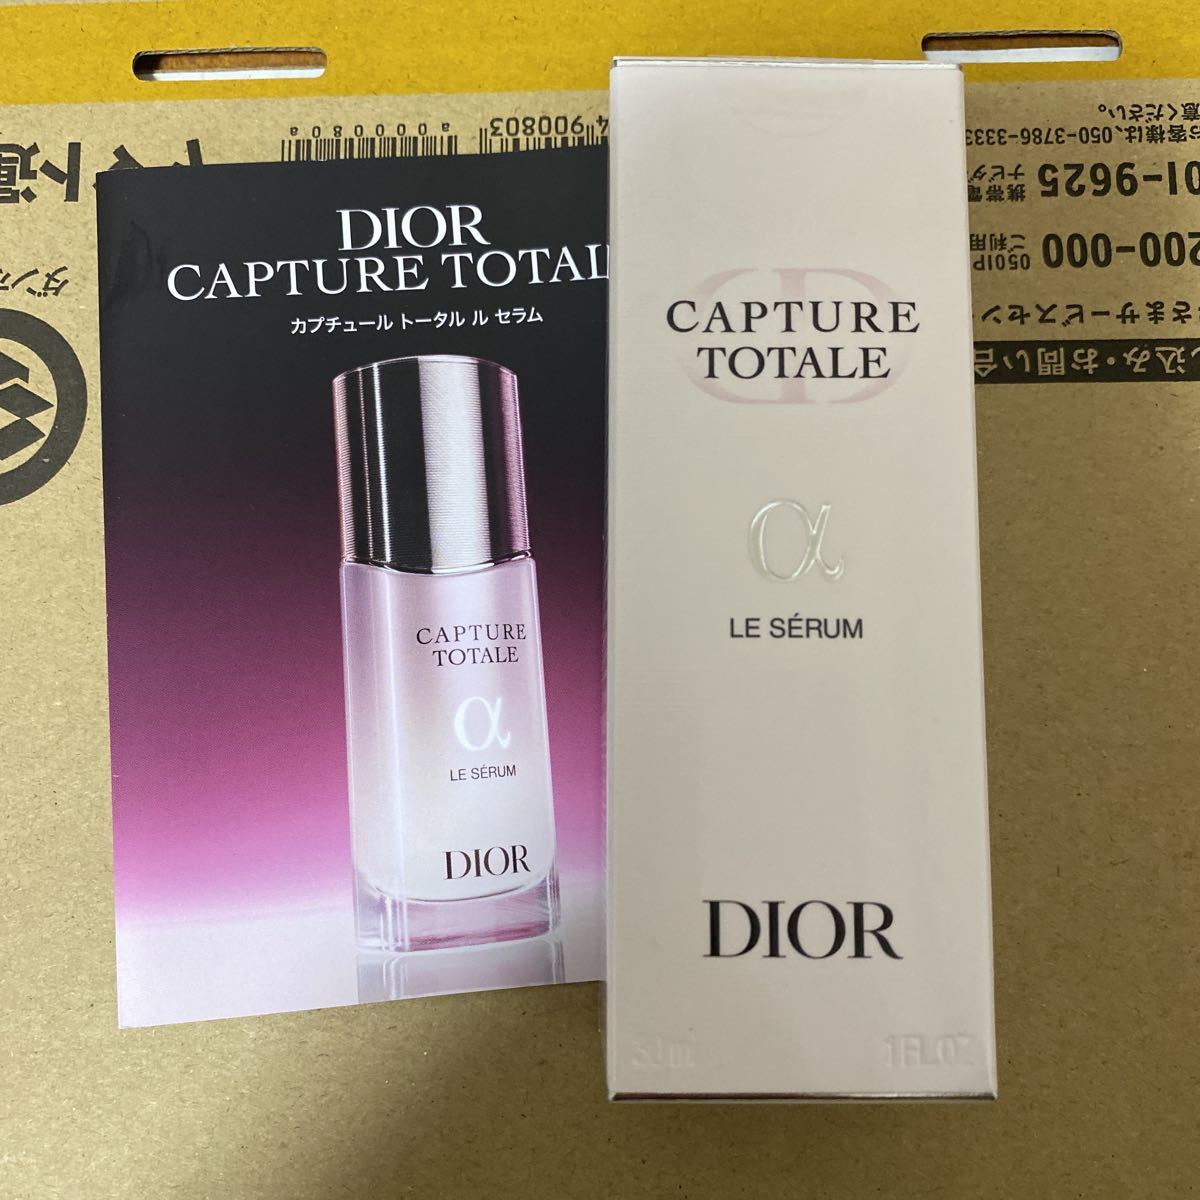 Dior ディオール カプチュール トータル ル セラム 美容液 30ml 新品未